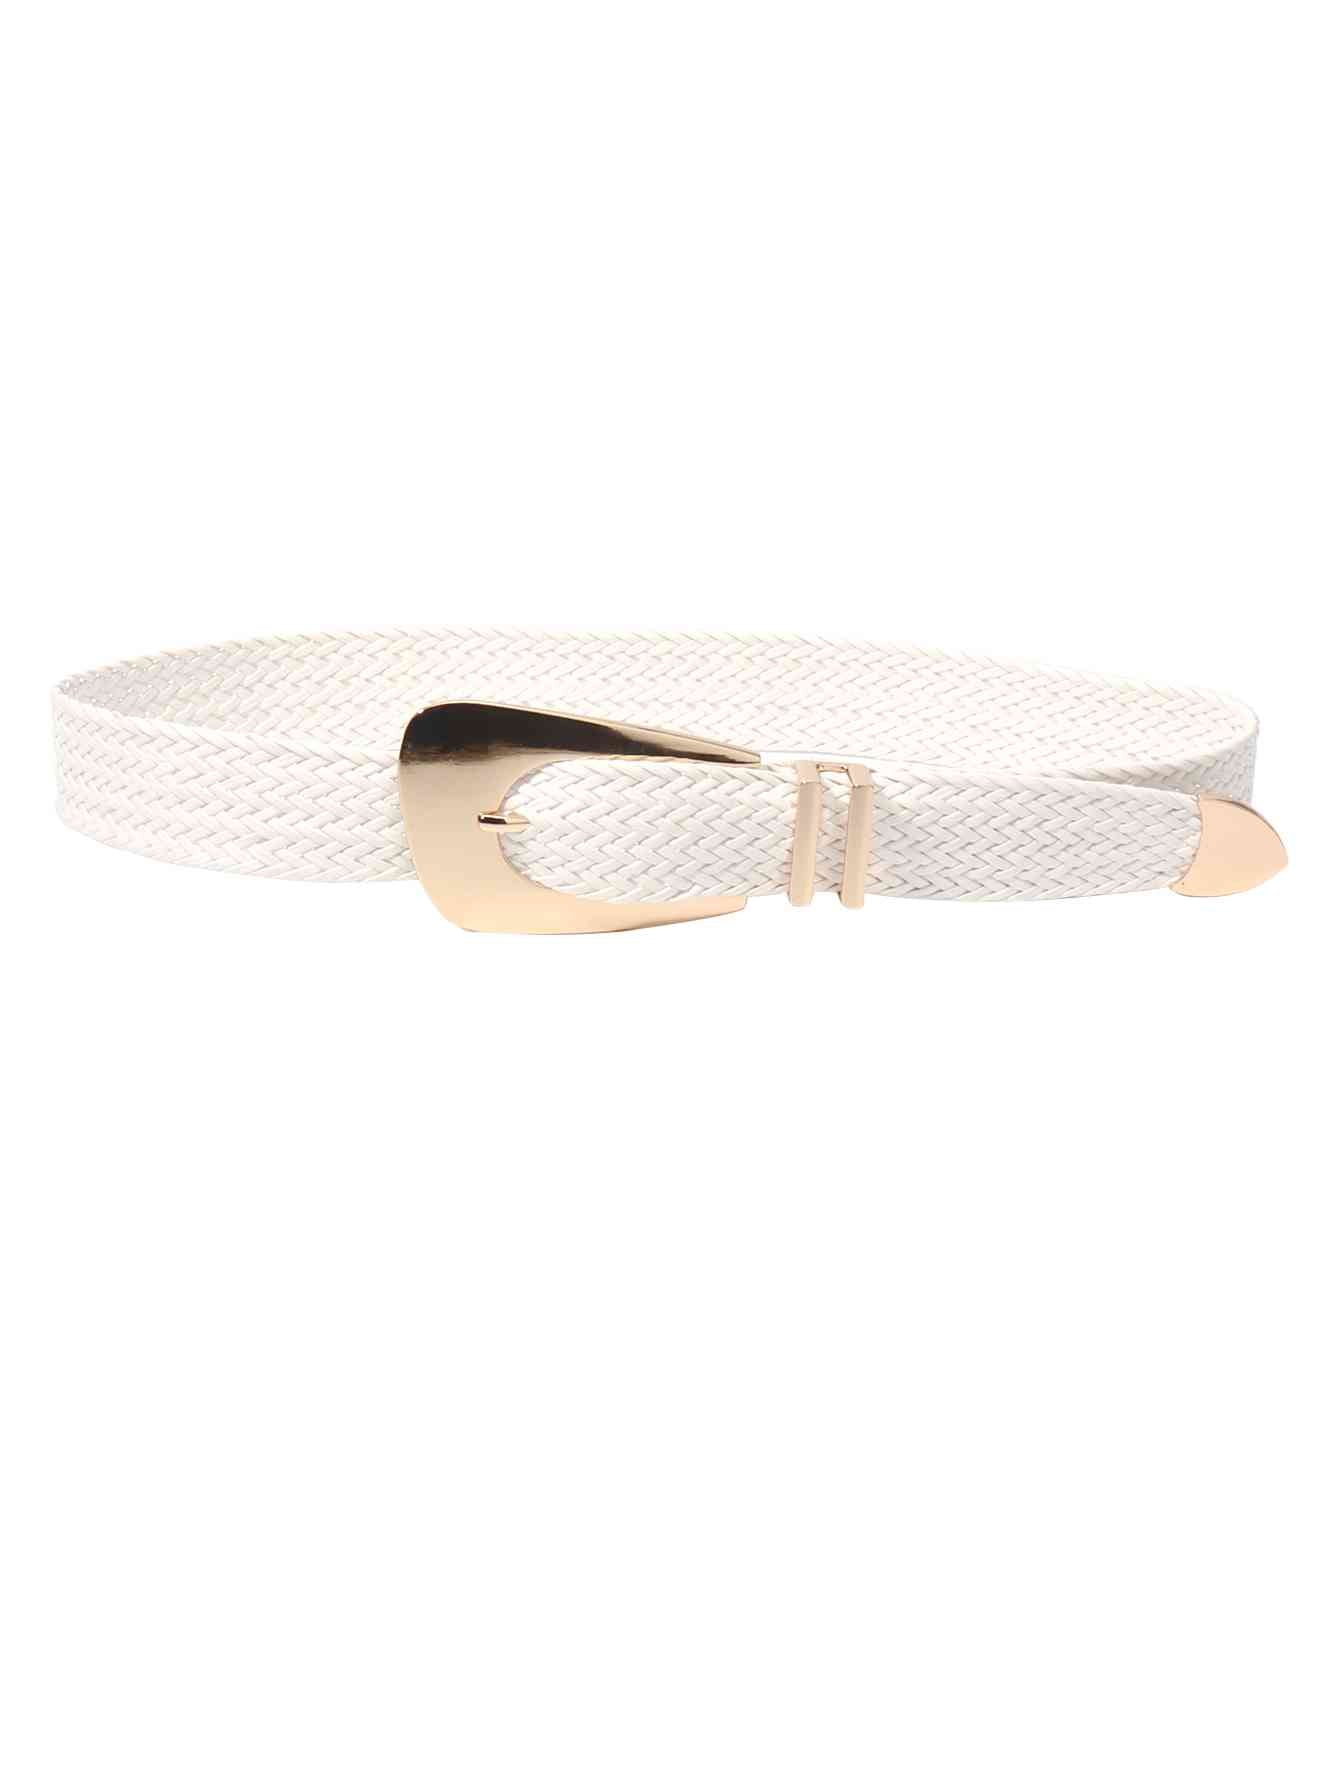 Irregular Buckle Braid Belt White One Size